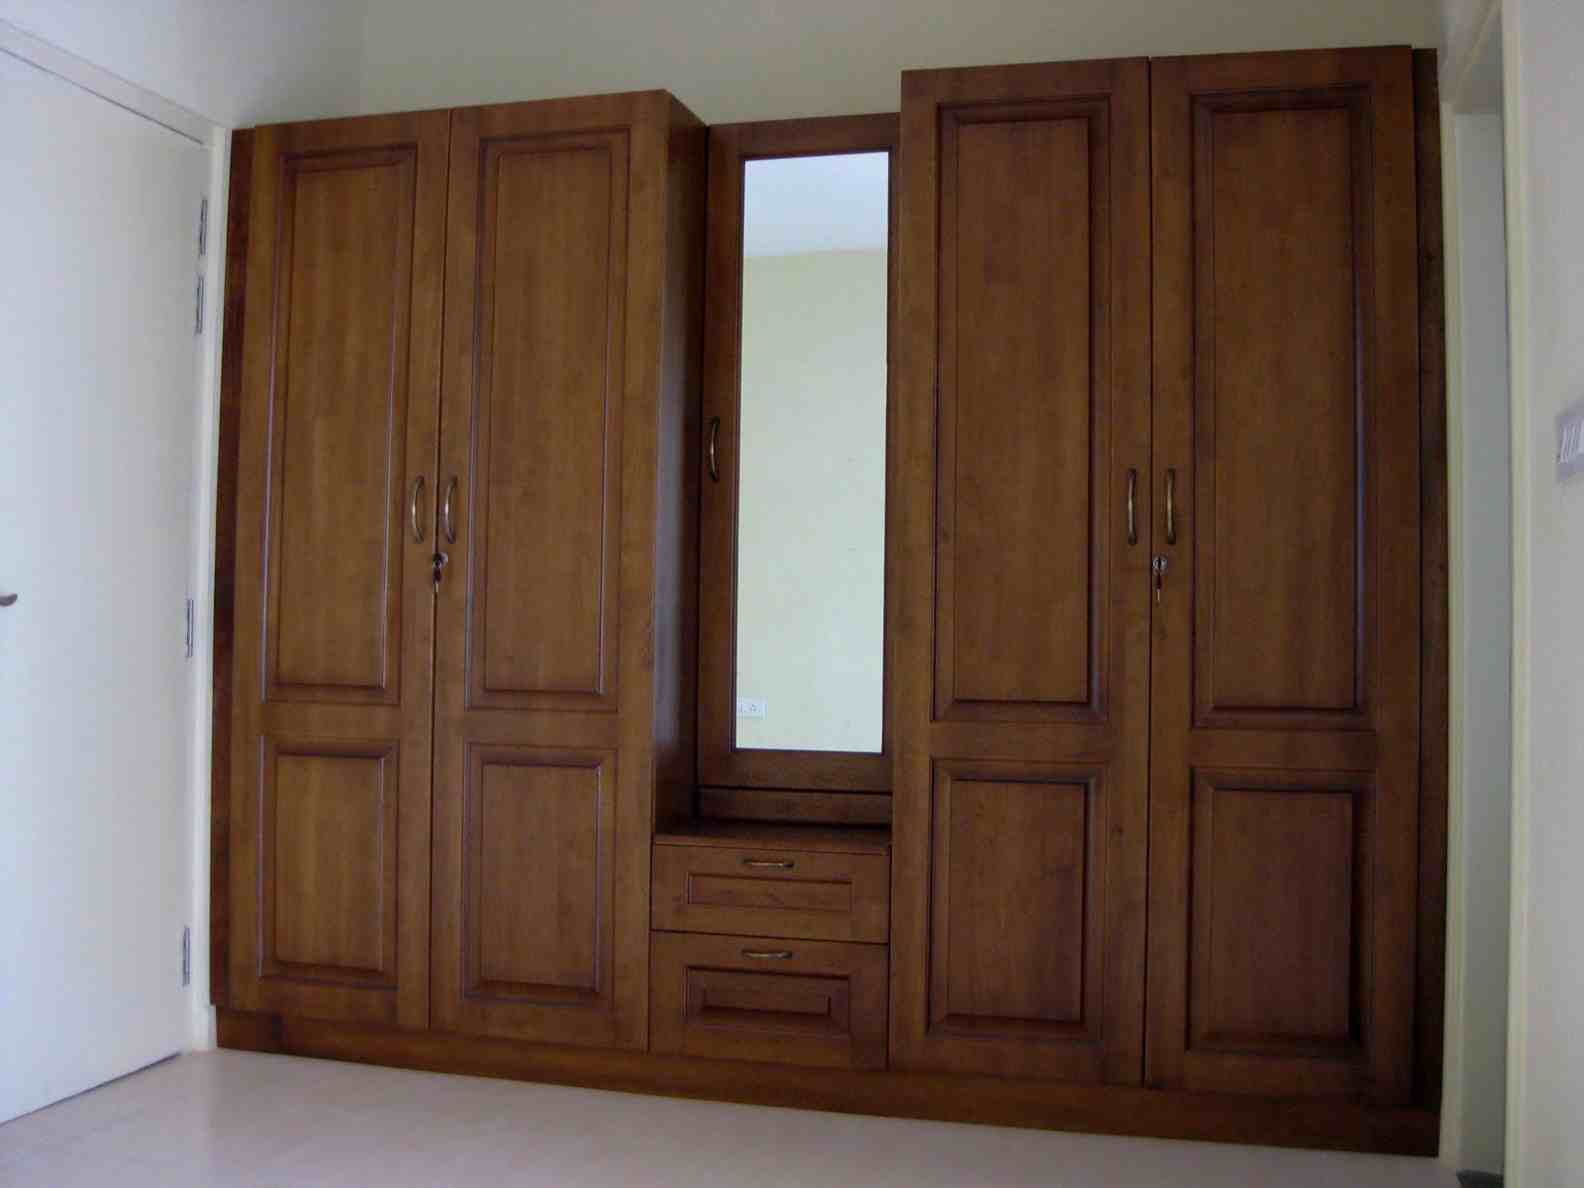 Desain Lemari Pakaian Minimalis 4 Pintu Jati Furniture Rumah 1574